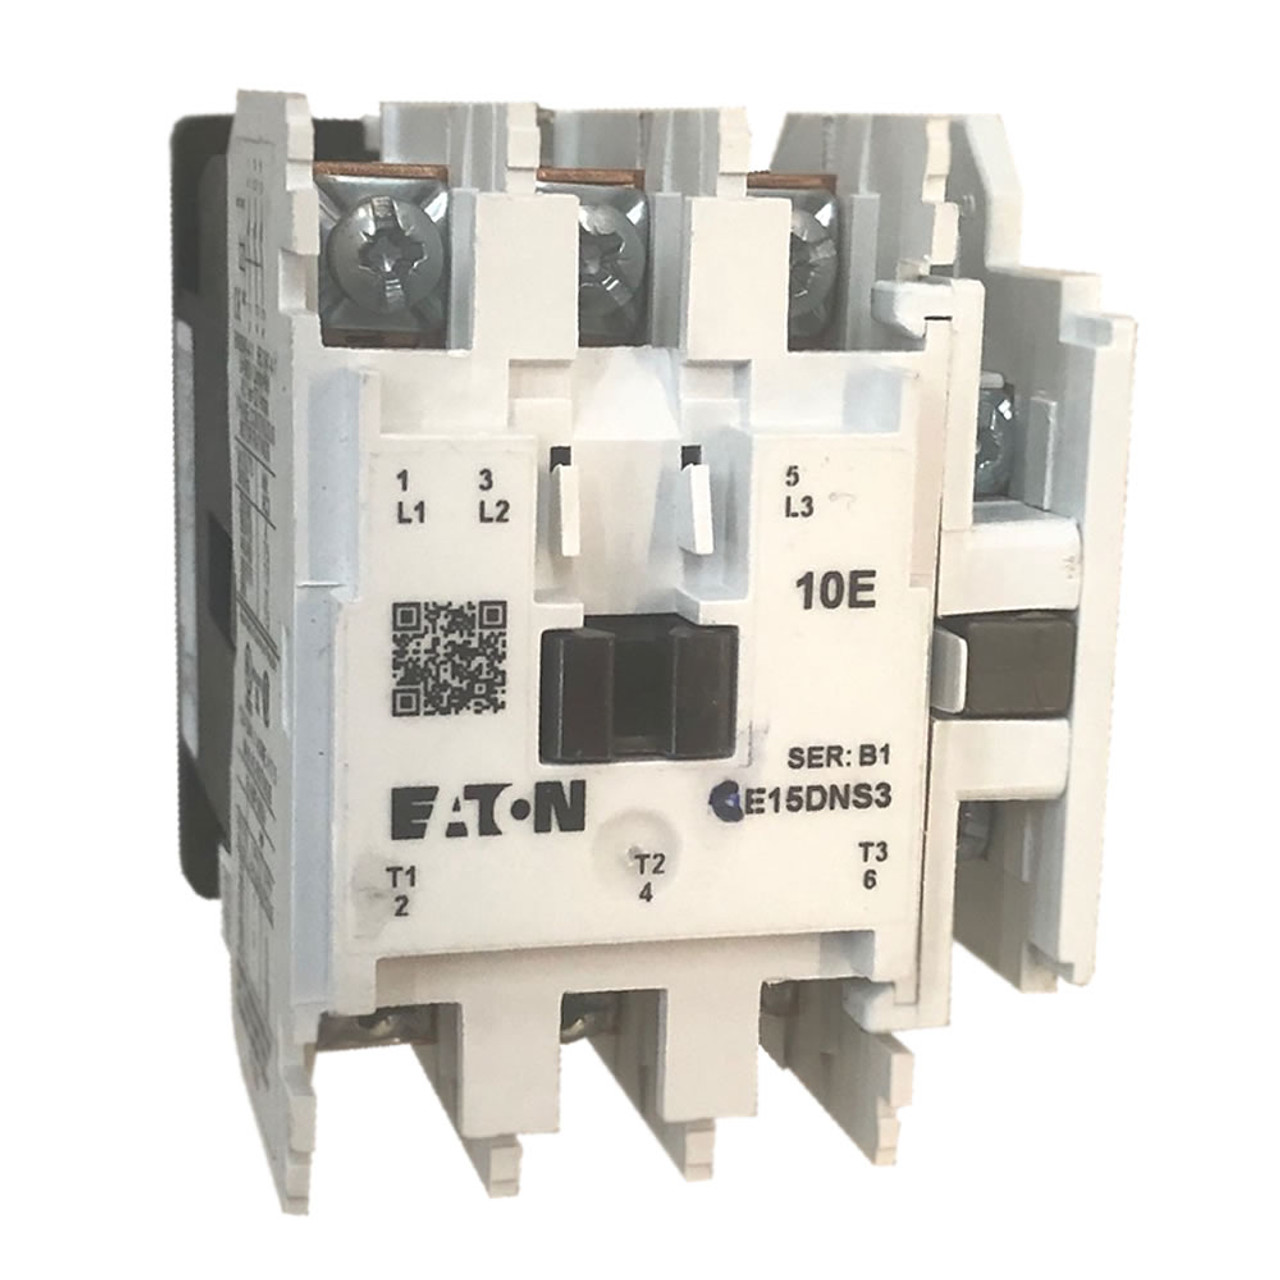 Eaton CE15DNS3 IEC contactor